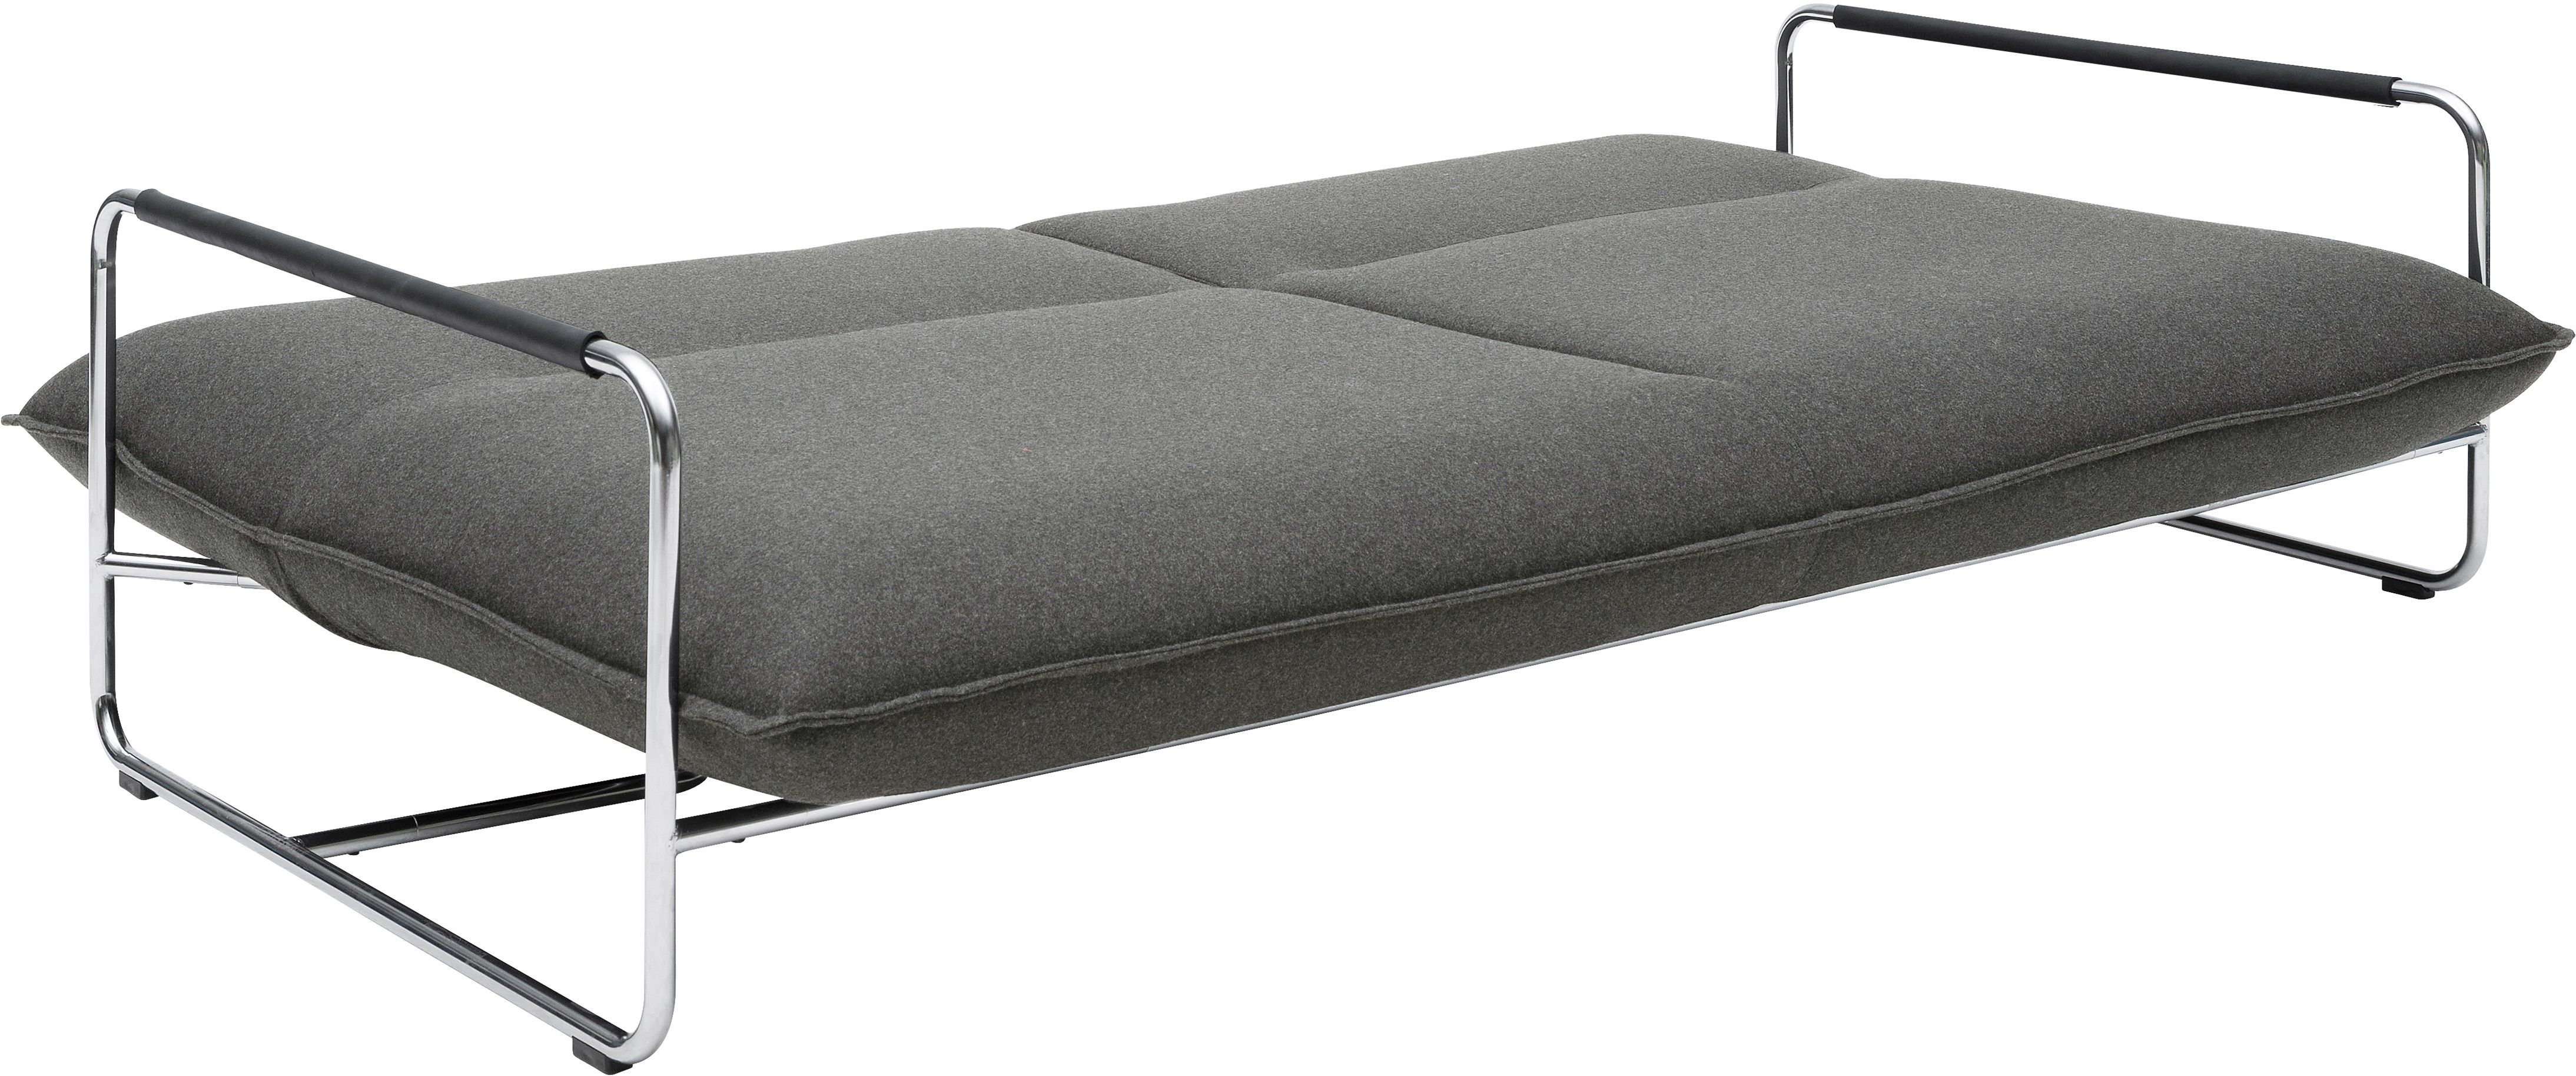 Sofa bed Nova by Softline